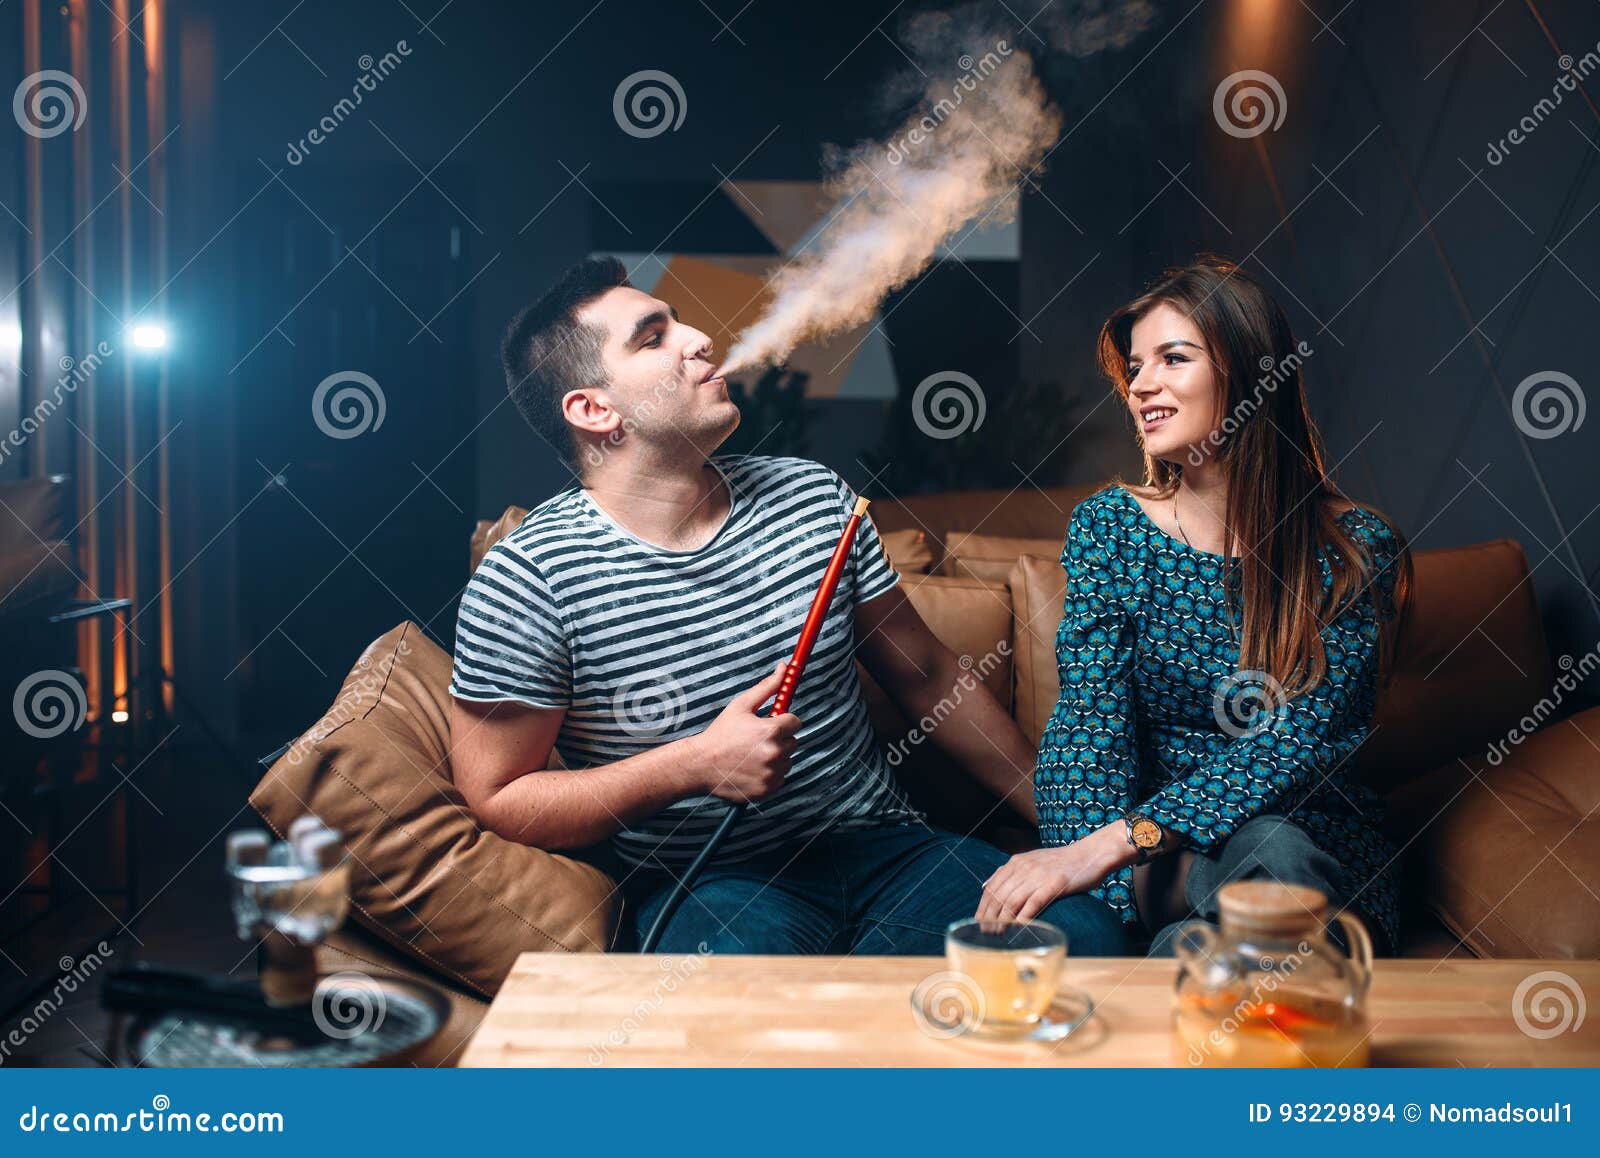 Муж курит в квартире. Кальян фотосессия. Девушка с кальяном. Кальян пар. Пары с кальянами.